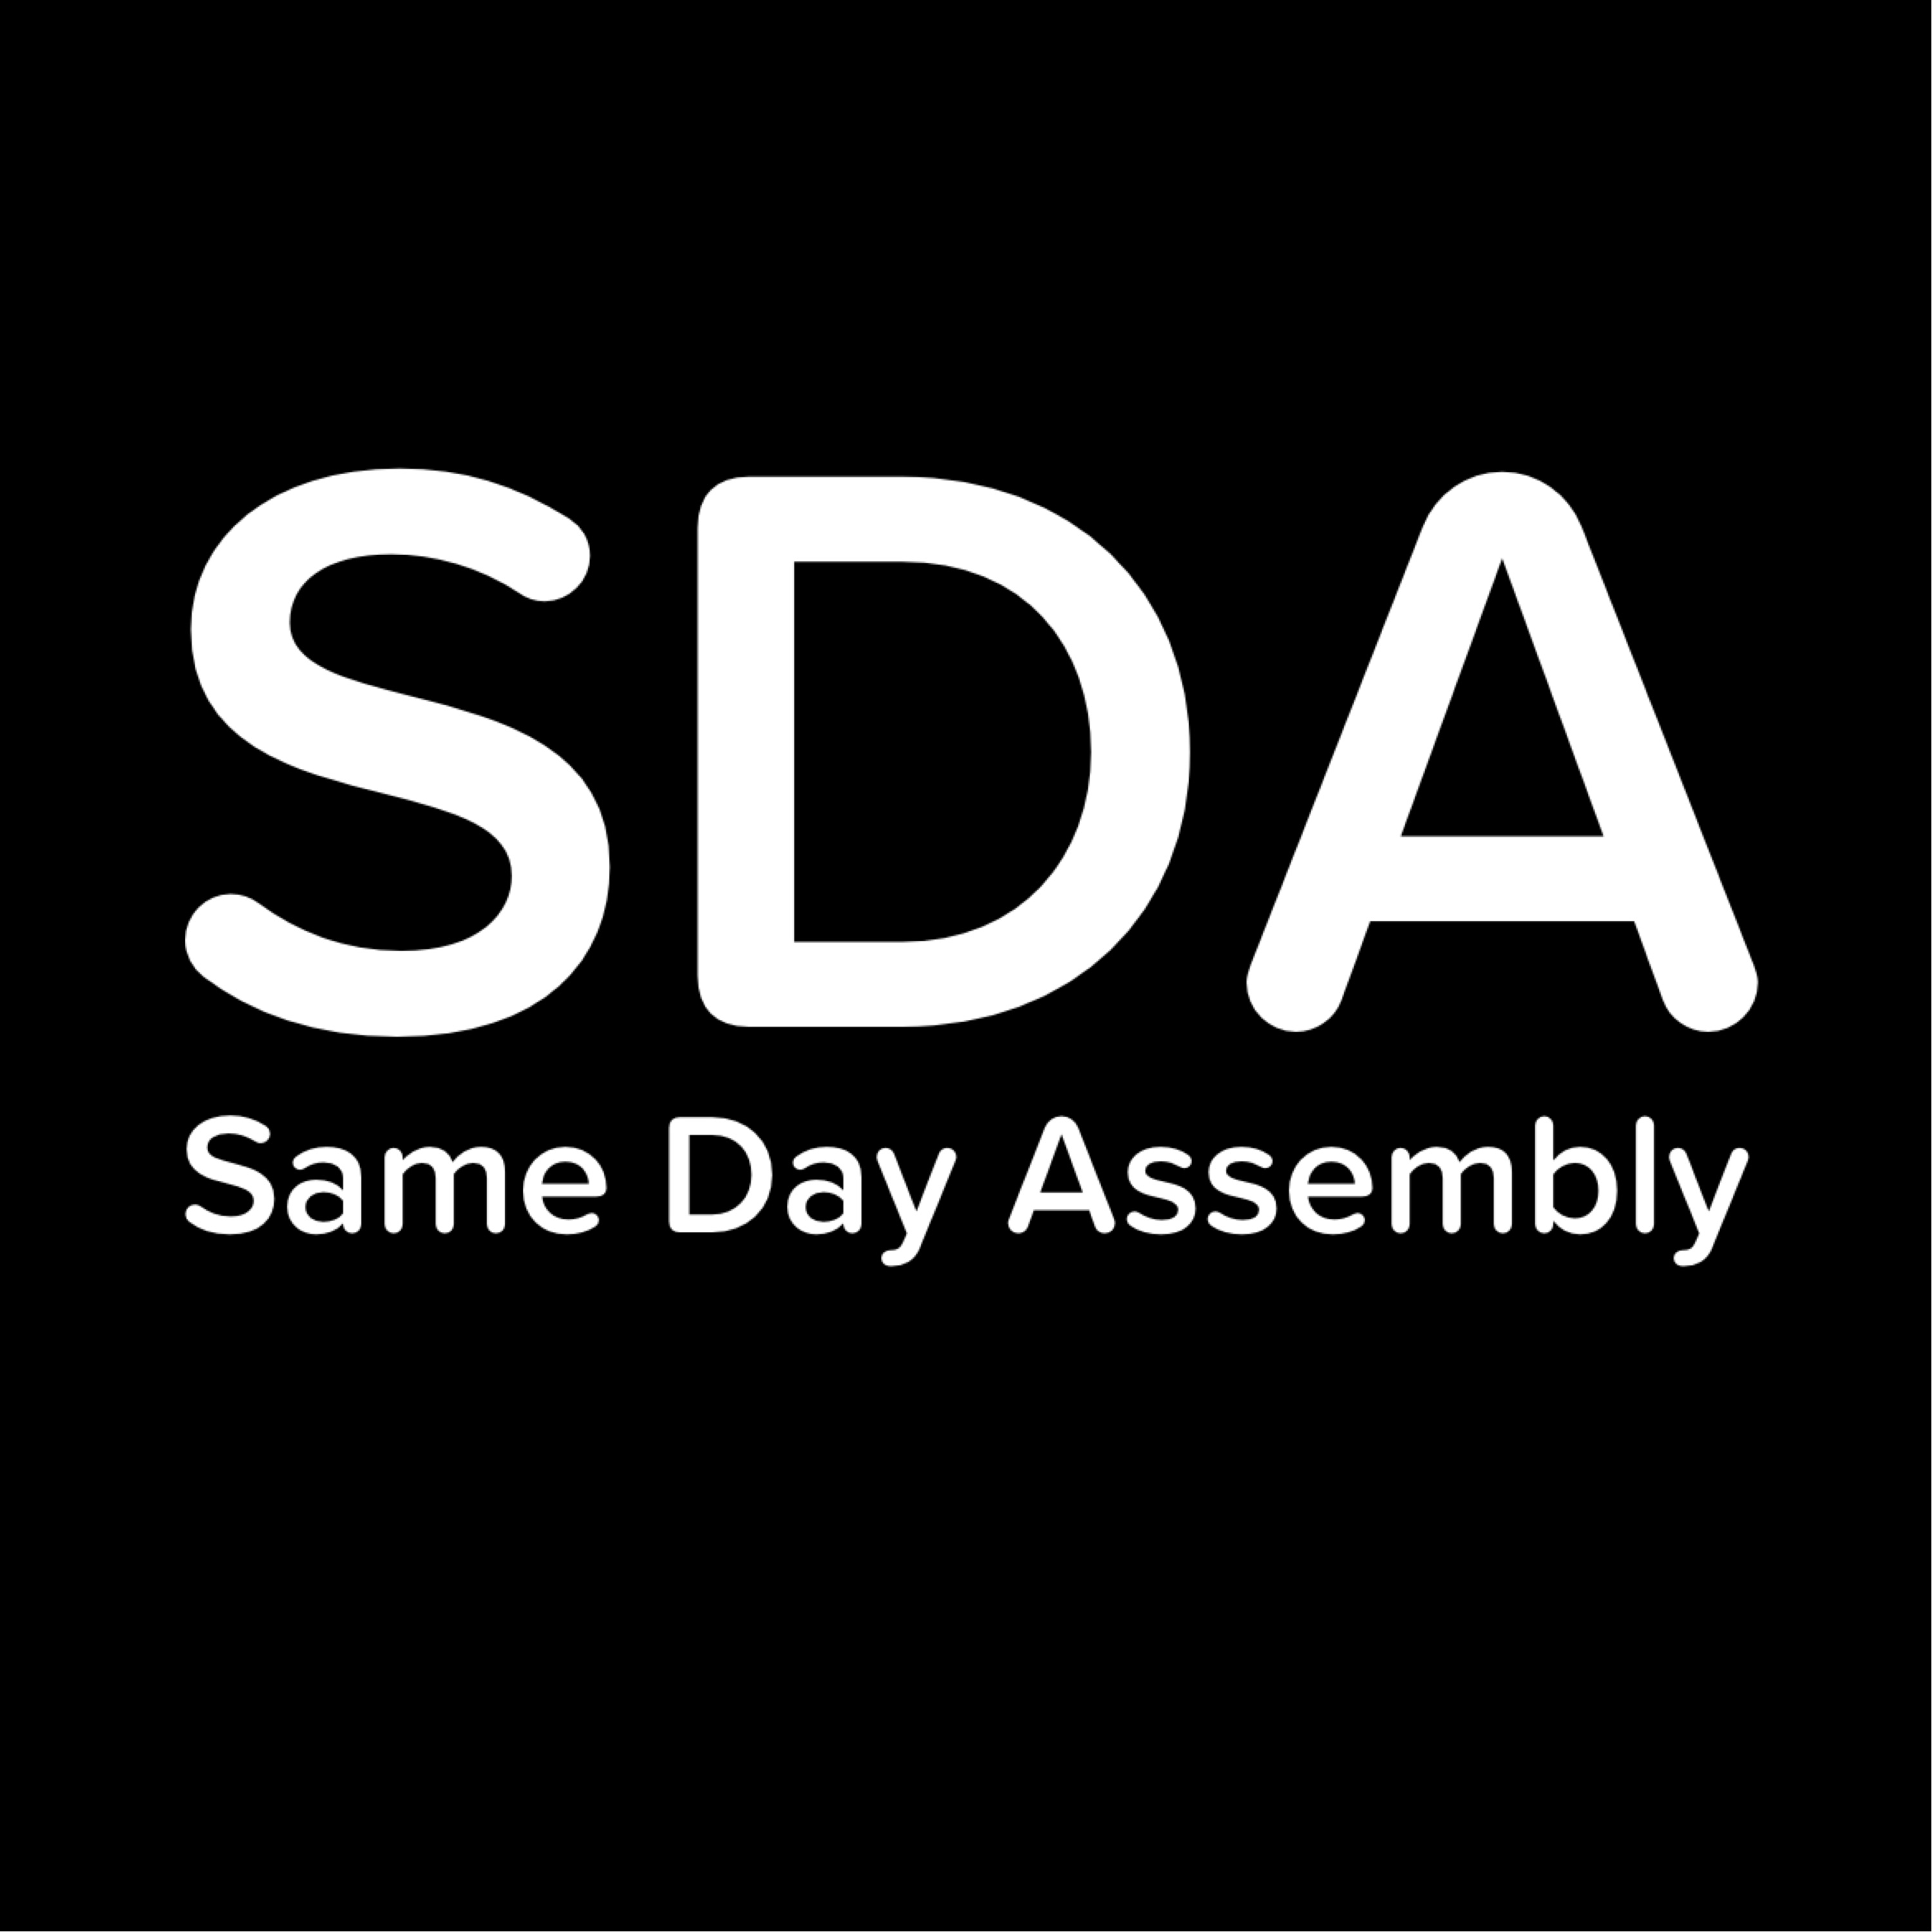 Same Day Assembly Logo